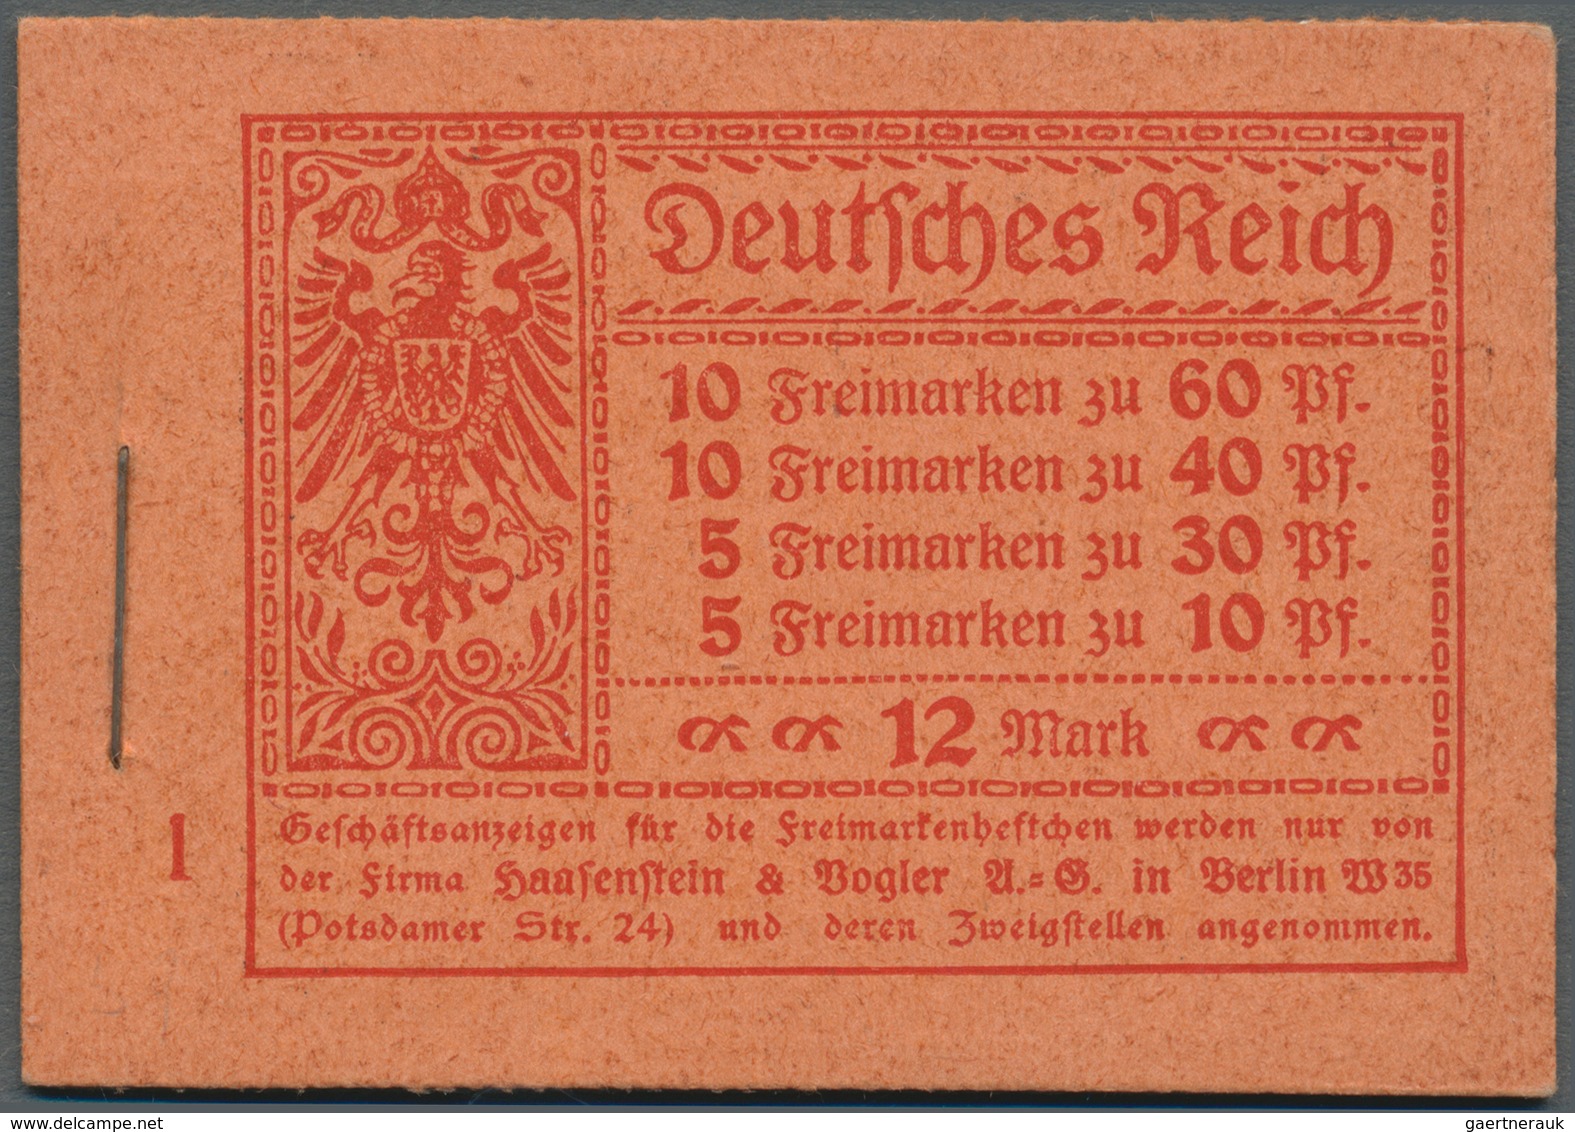 Deutsches Reich - Markenheftchen: 1921, 12 M. Germania-Heftchen Mit ONr. 1, Heftchen-Rand Dgz., Post - Cuadernillos